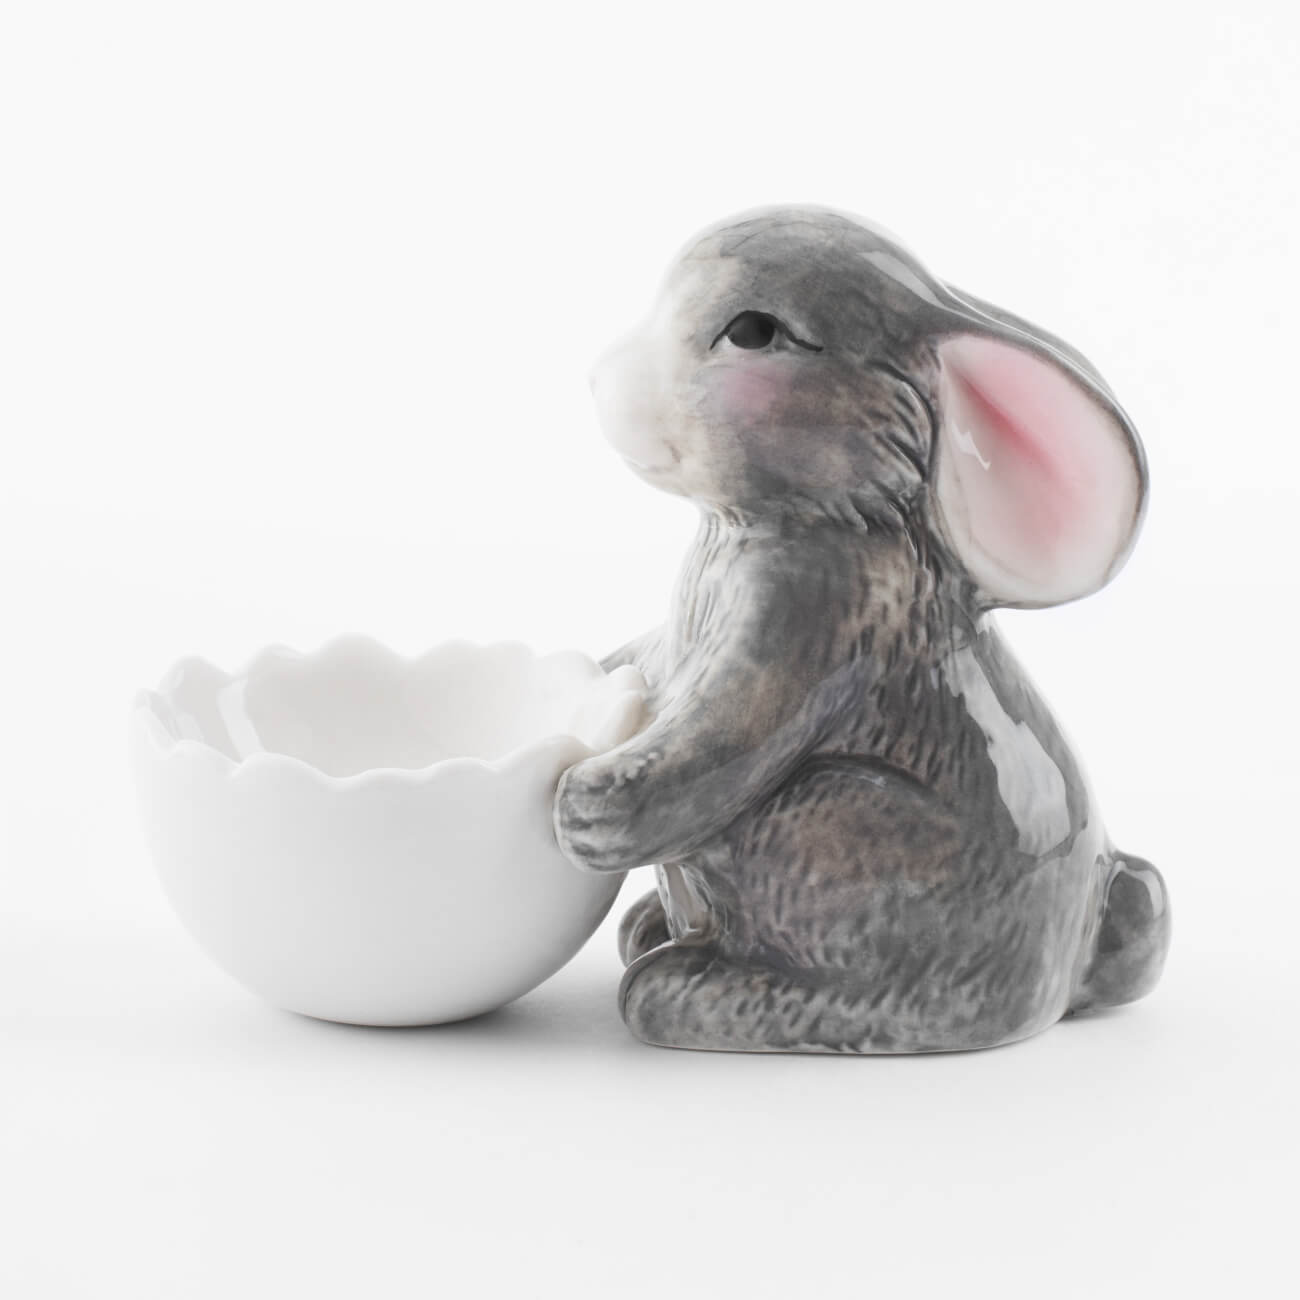 Подставка для яйца, 11 см, фарфор P, бело-серая, Кролик со скорлупой, Pure Easter